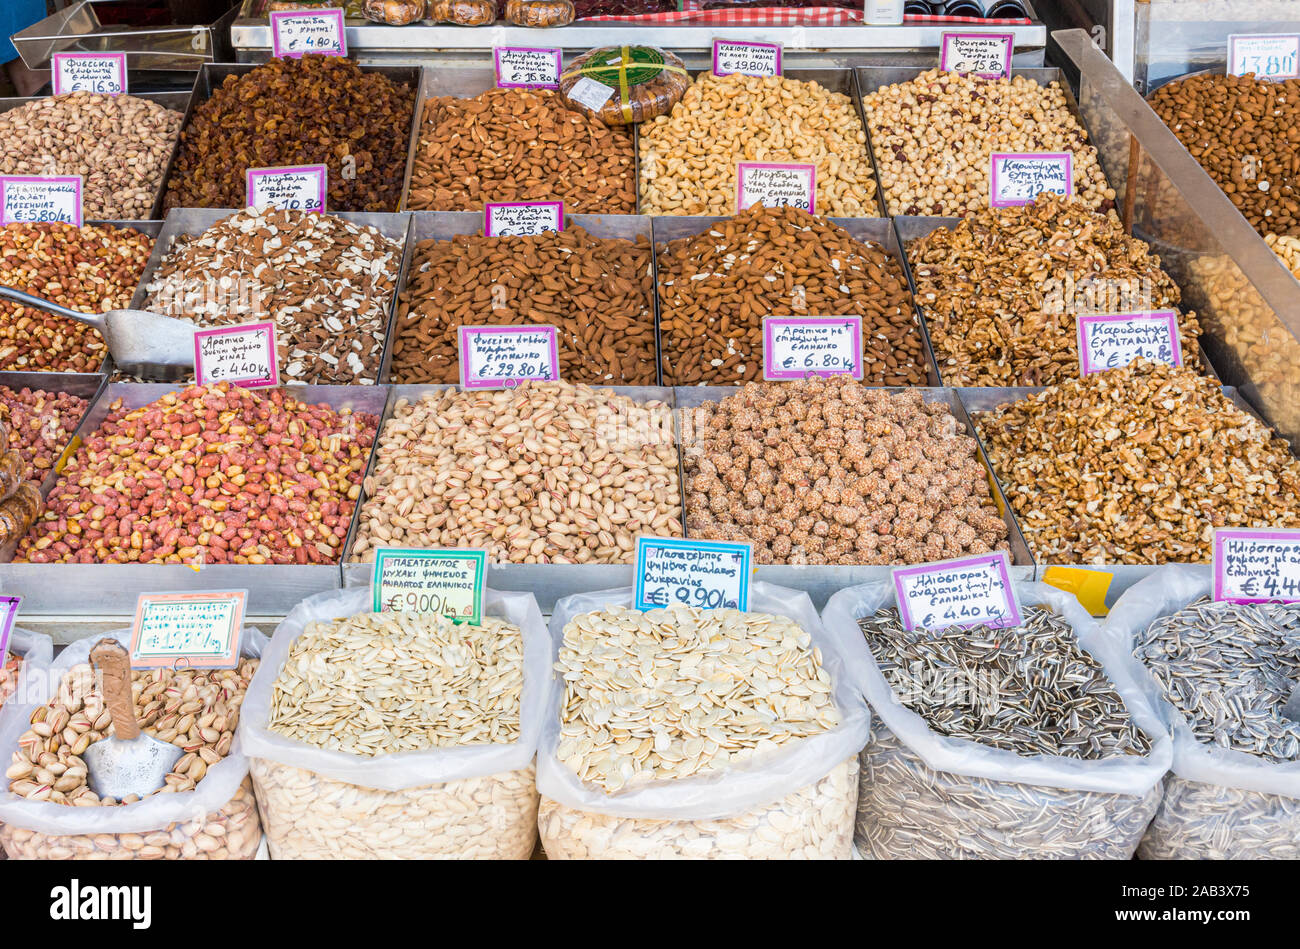 Mercado de los frutos secos en España: situación y tendencias